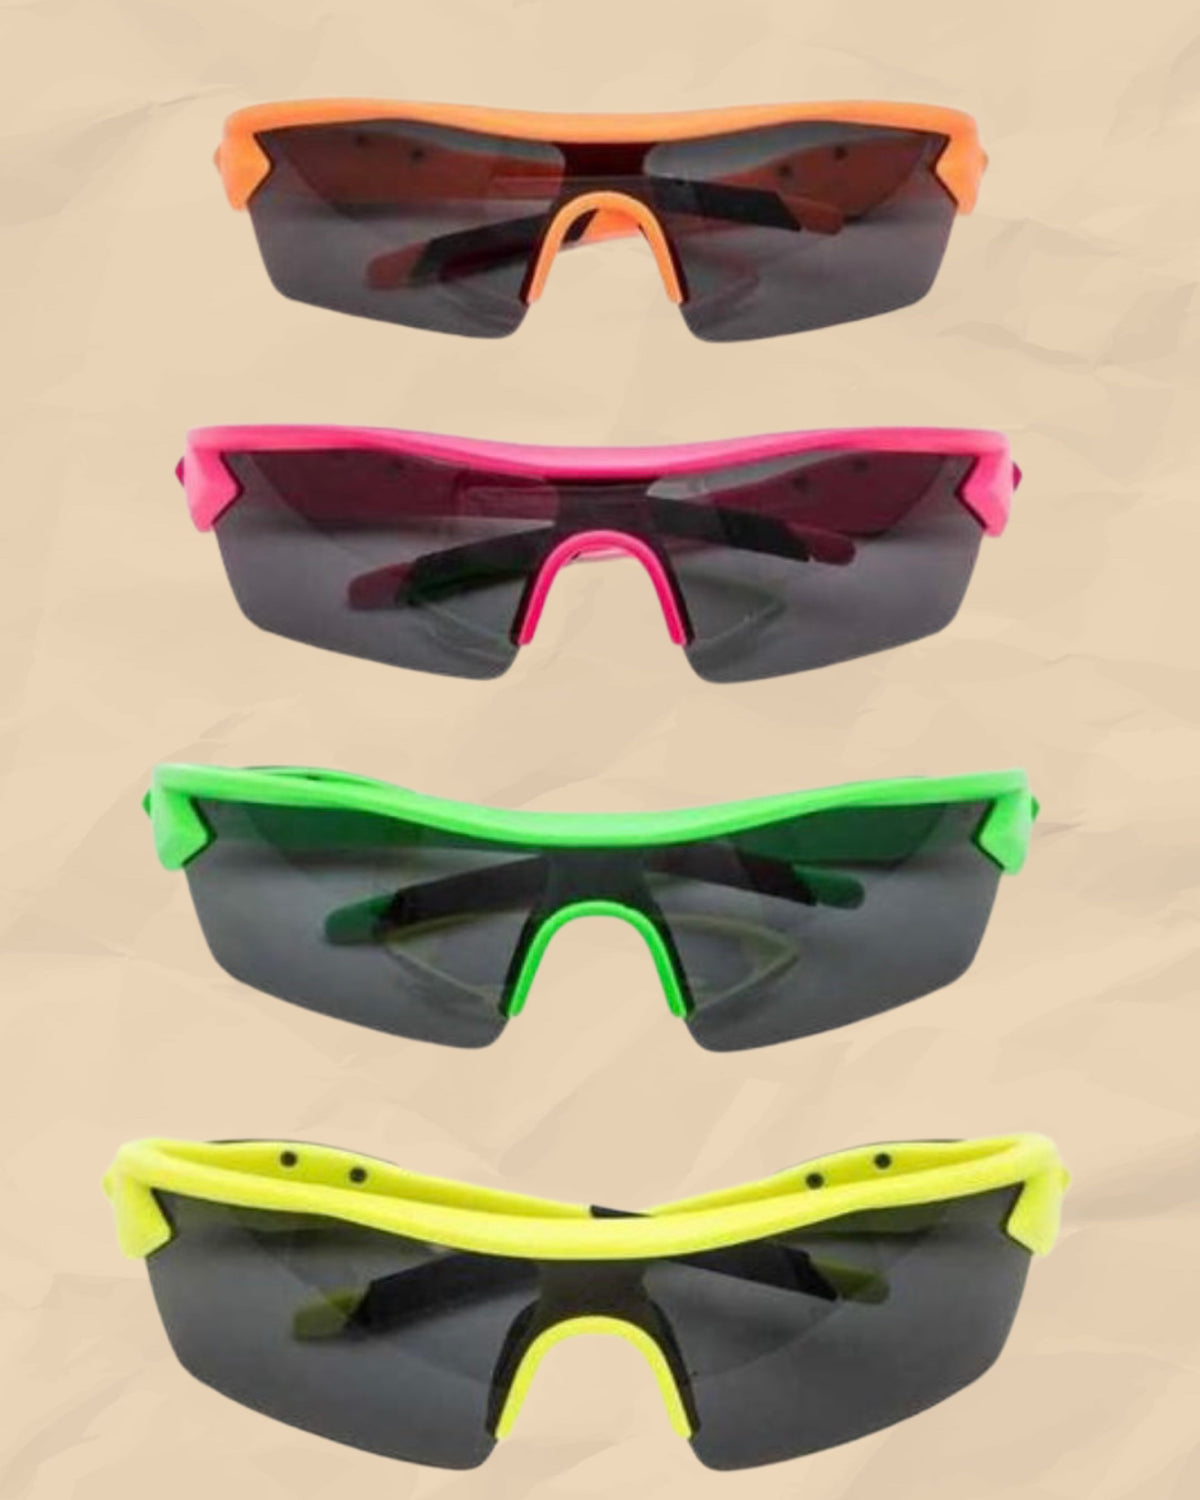 Power Ranger Sunglasses